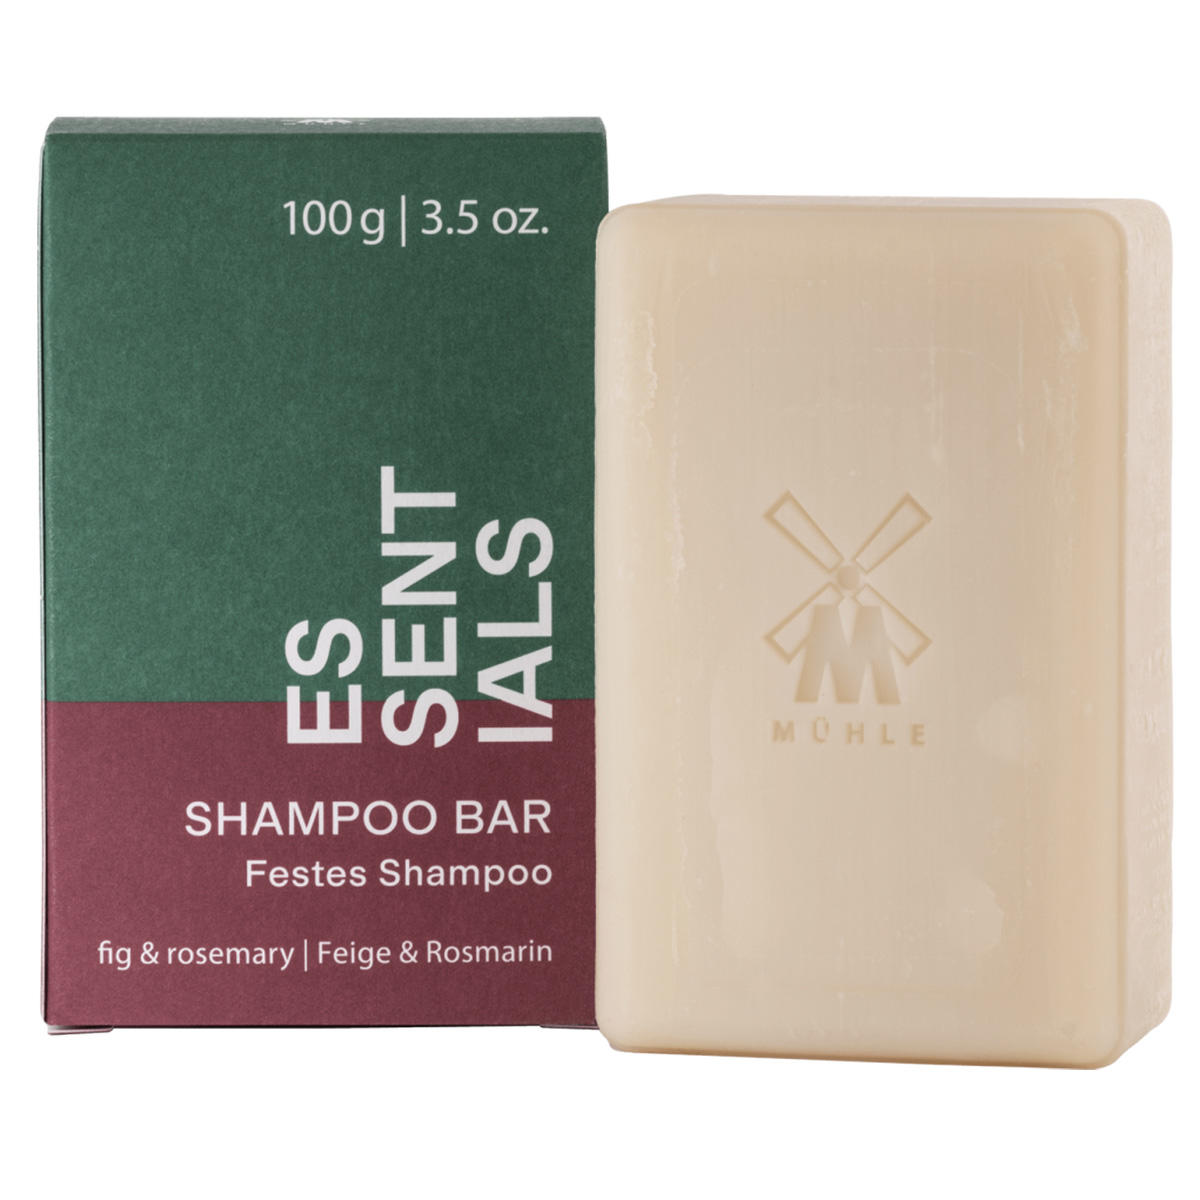 MÜHLE ESSENTIALS Stevige shampoo Vijg en rozemarijn 100 g - 1